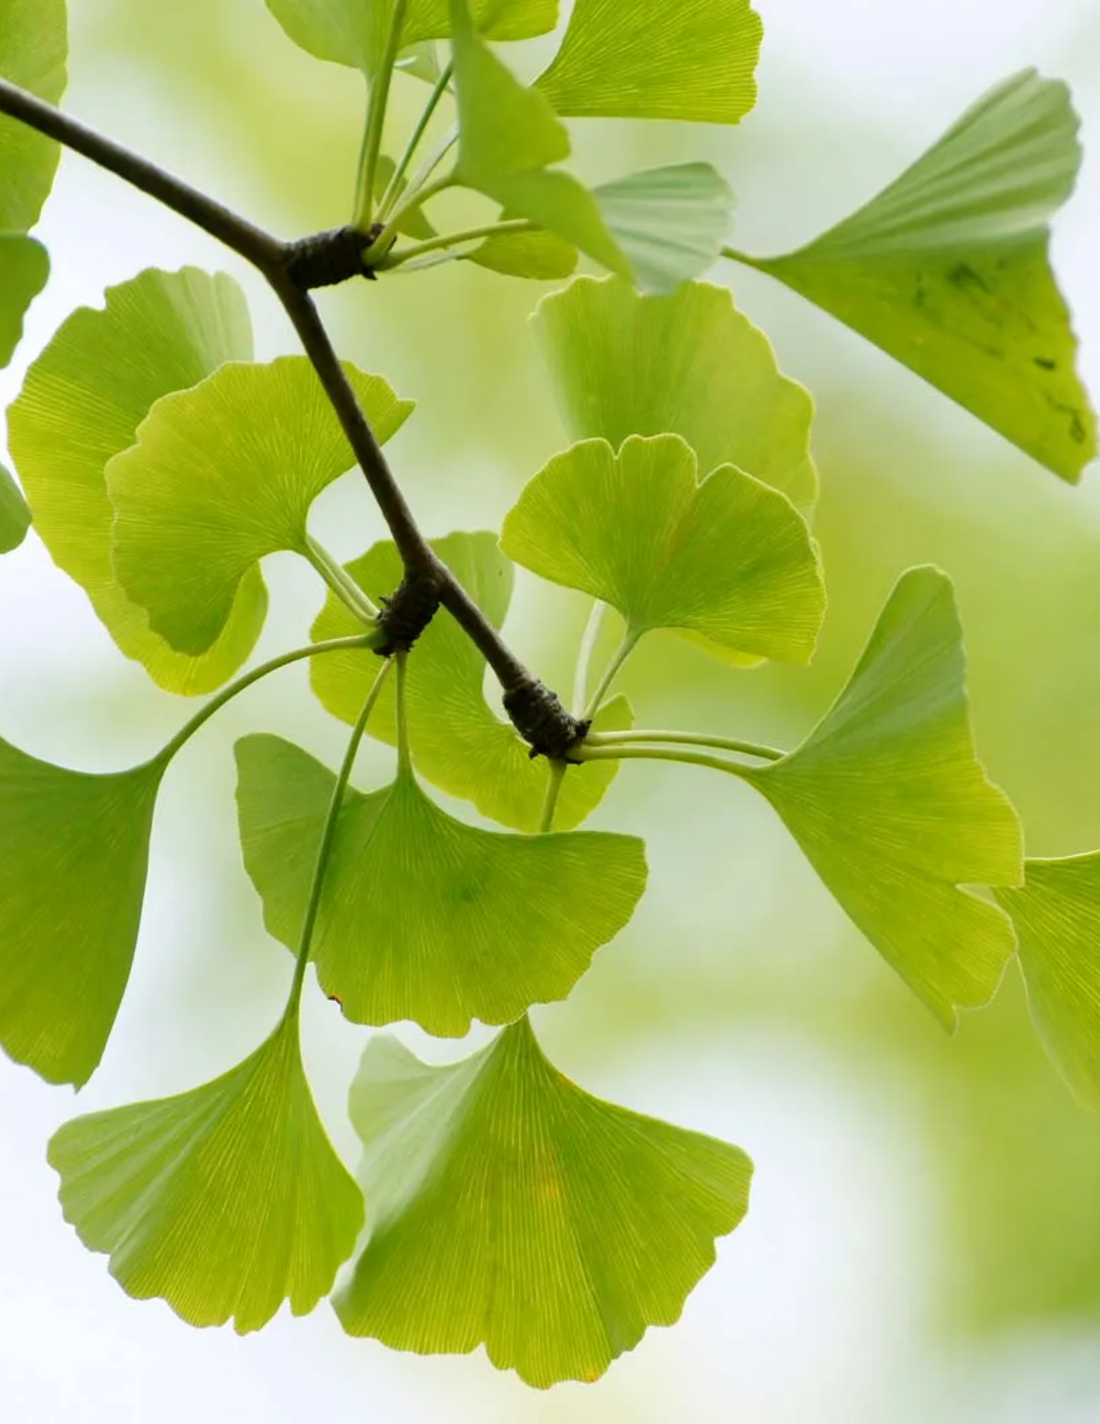 Ginkgo Biloba tree with fan-shaped leaves